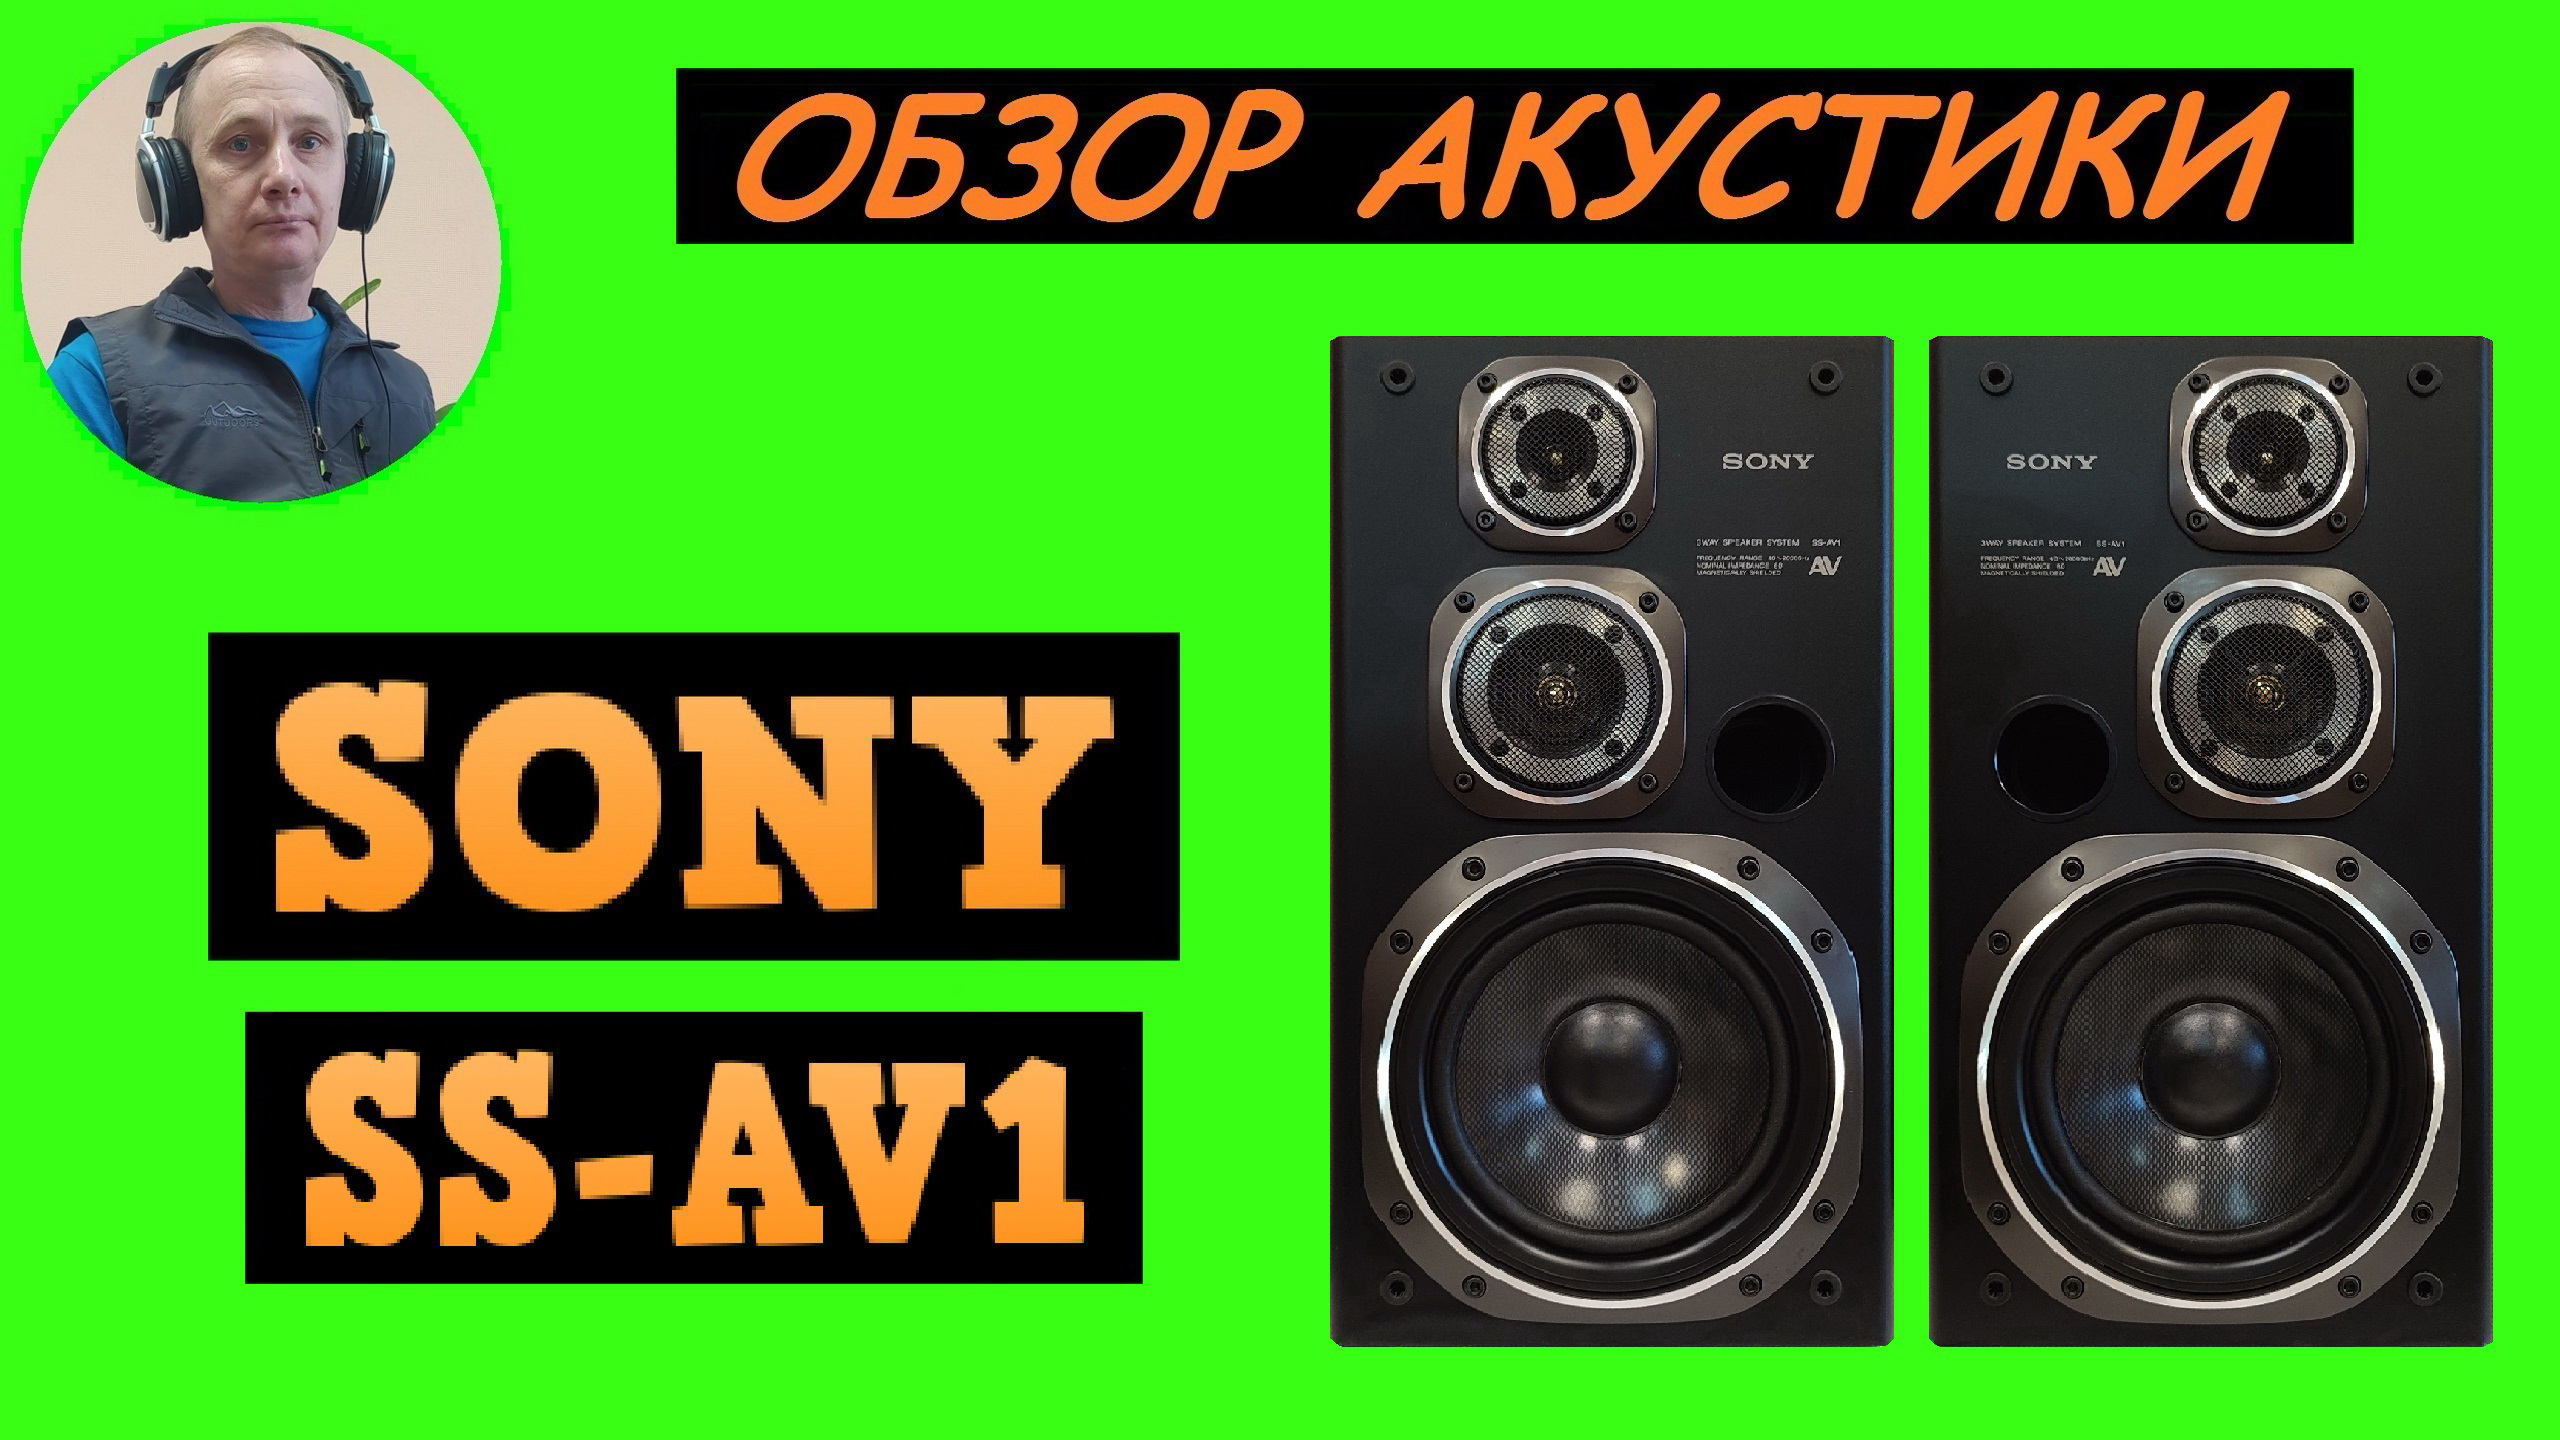 Обзор акустики SONY SS-AV1